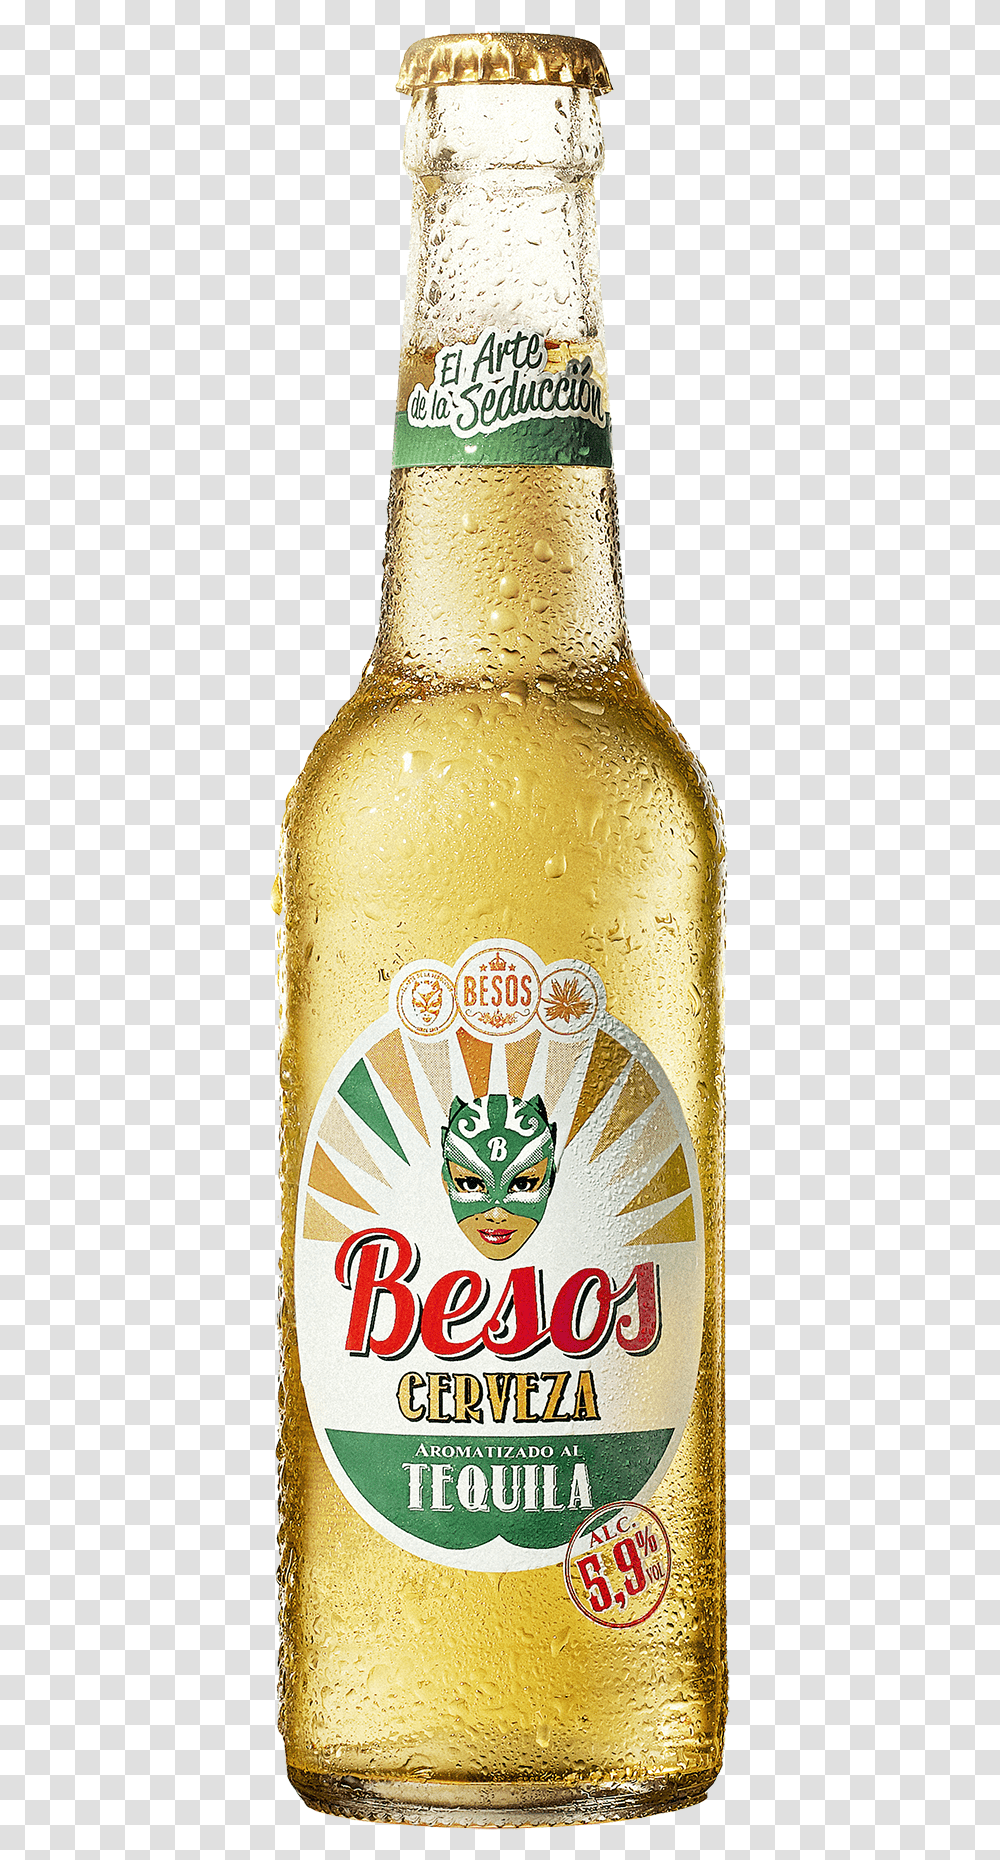 Besos Cerveza Download Besos Cerveza, Beer, Alcohol, Beverage, Drink Transparent Png